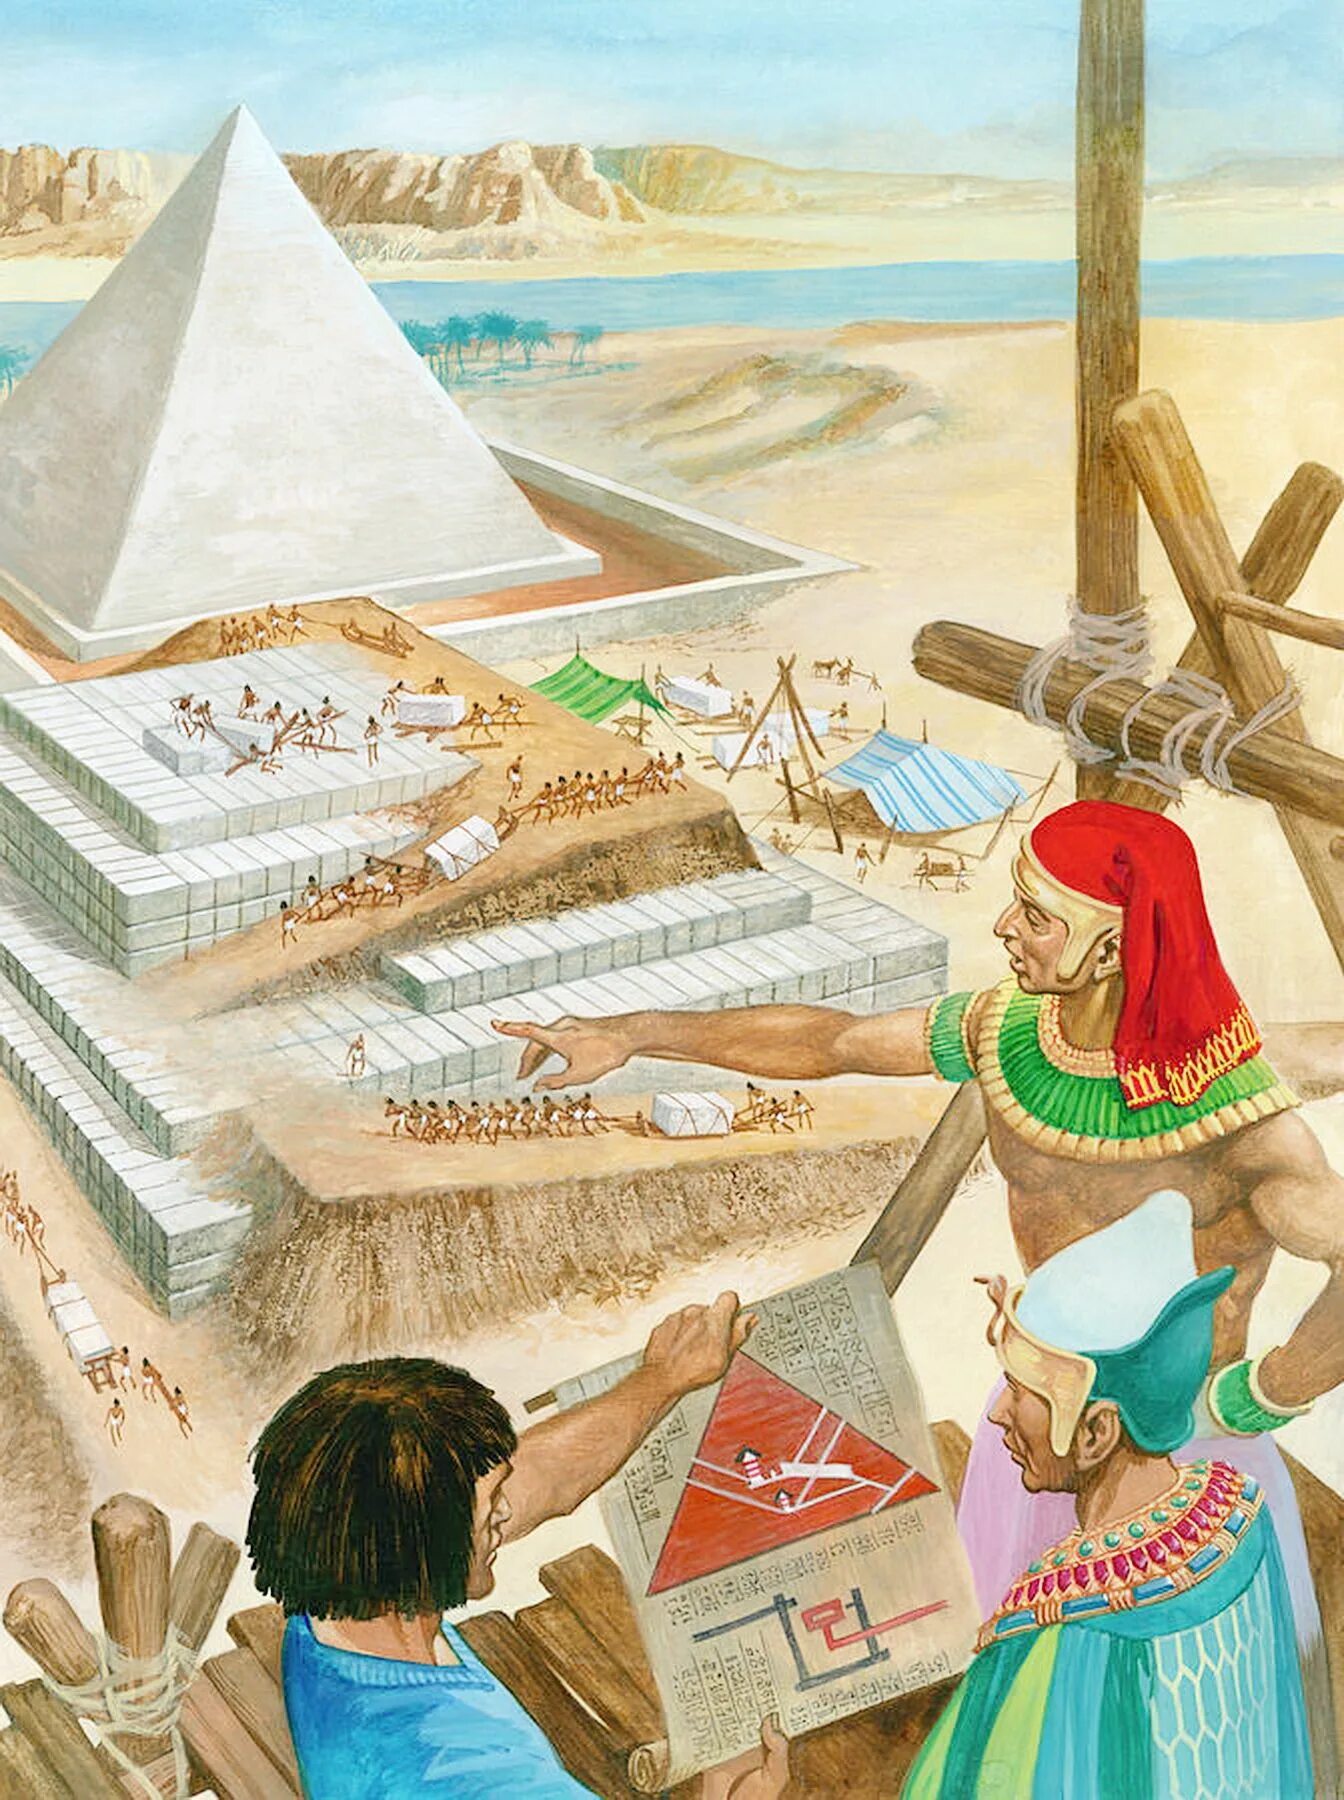 Строительство в древности. Пирамида Хеопса древний Египет. Стройка пирамид в древнем Египте. Пирамида Хеопса древний Египет арт. Древний Египет пирамида Хеопса постройка.